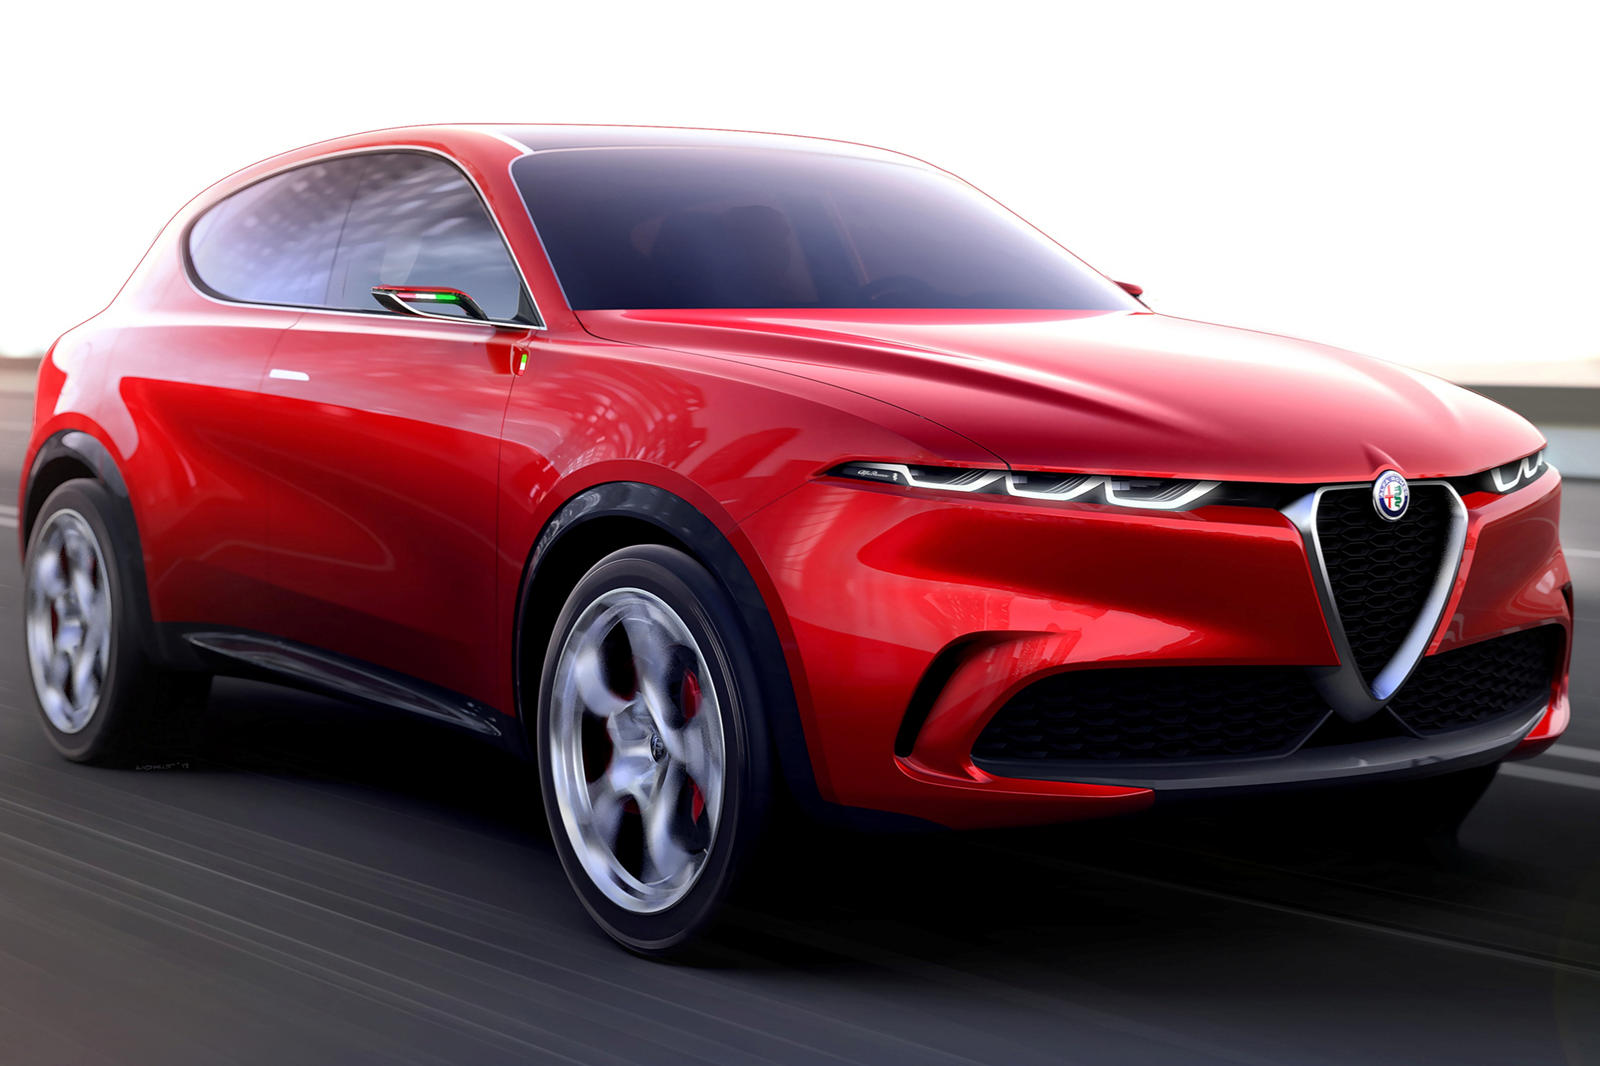 Материнская компания Alfa Romeo, FCA, и материнская компания Peugeot, PSA, в настоящее время находятся в процессе объединения, чтобы стать четвертым по величине автопроизводителем в мире. Те же источники, которые предсказывают новый электрический кро